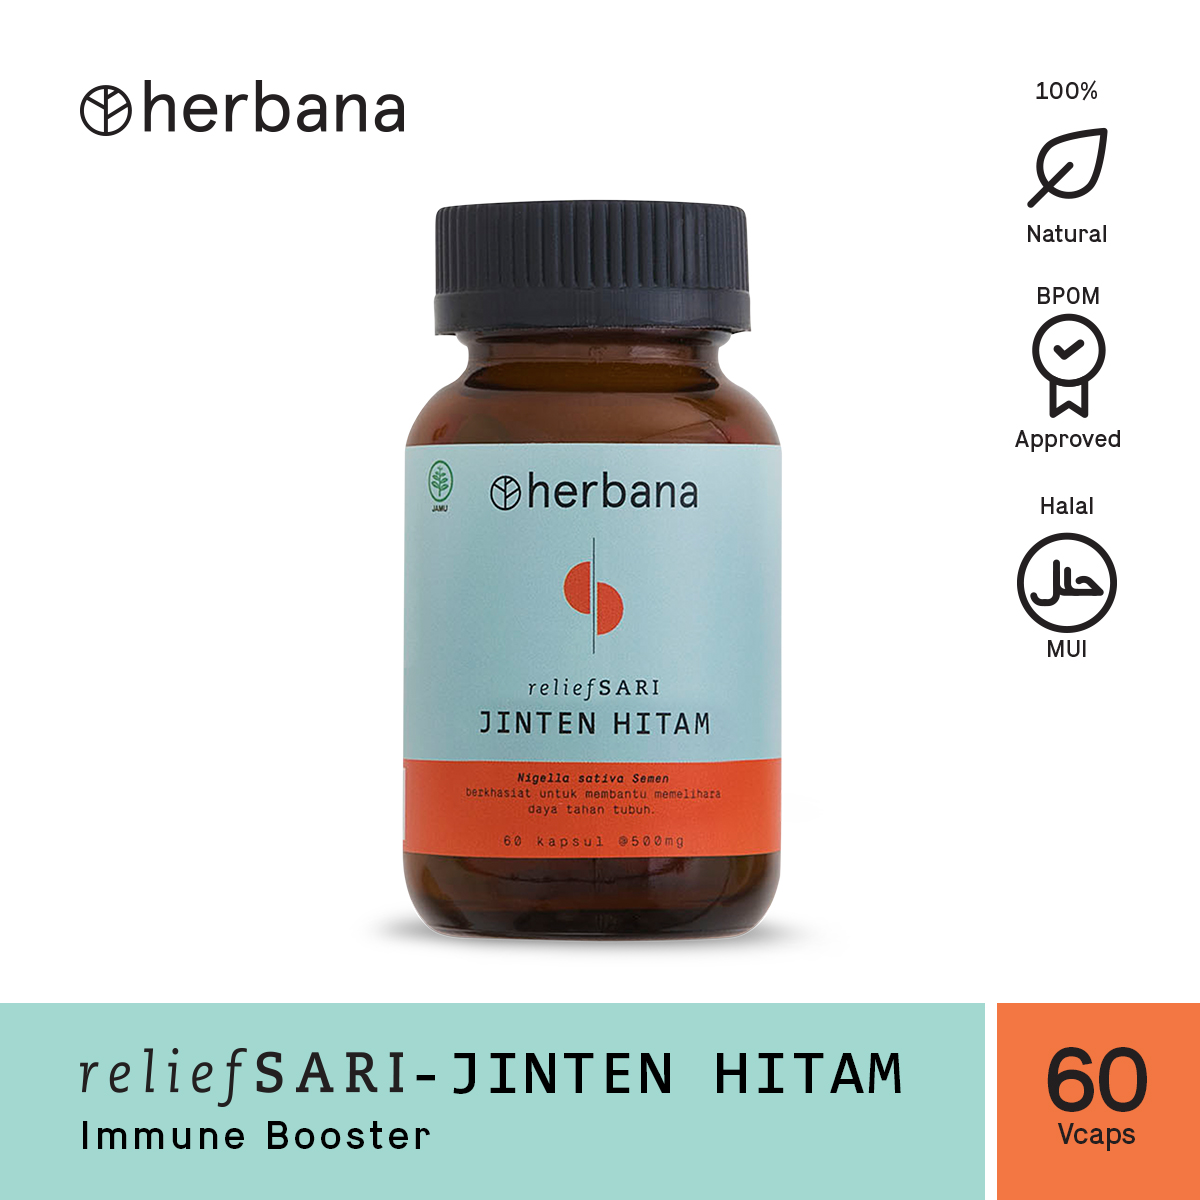 herbana-relief-sari-jinten-hitam-60-capsules-28-1615972662.jpg